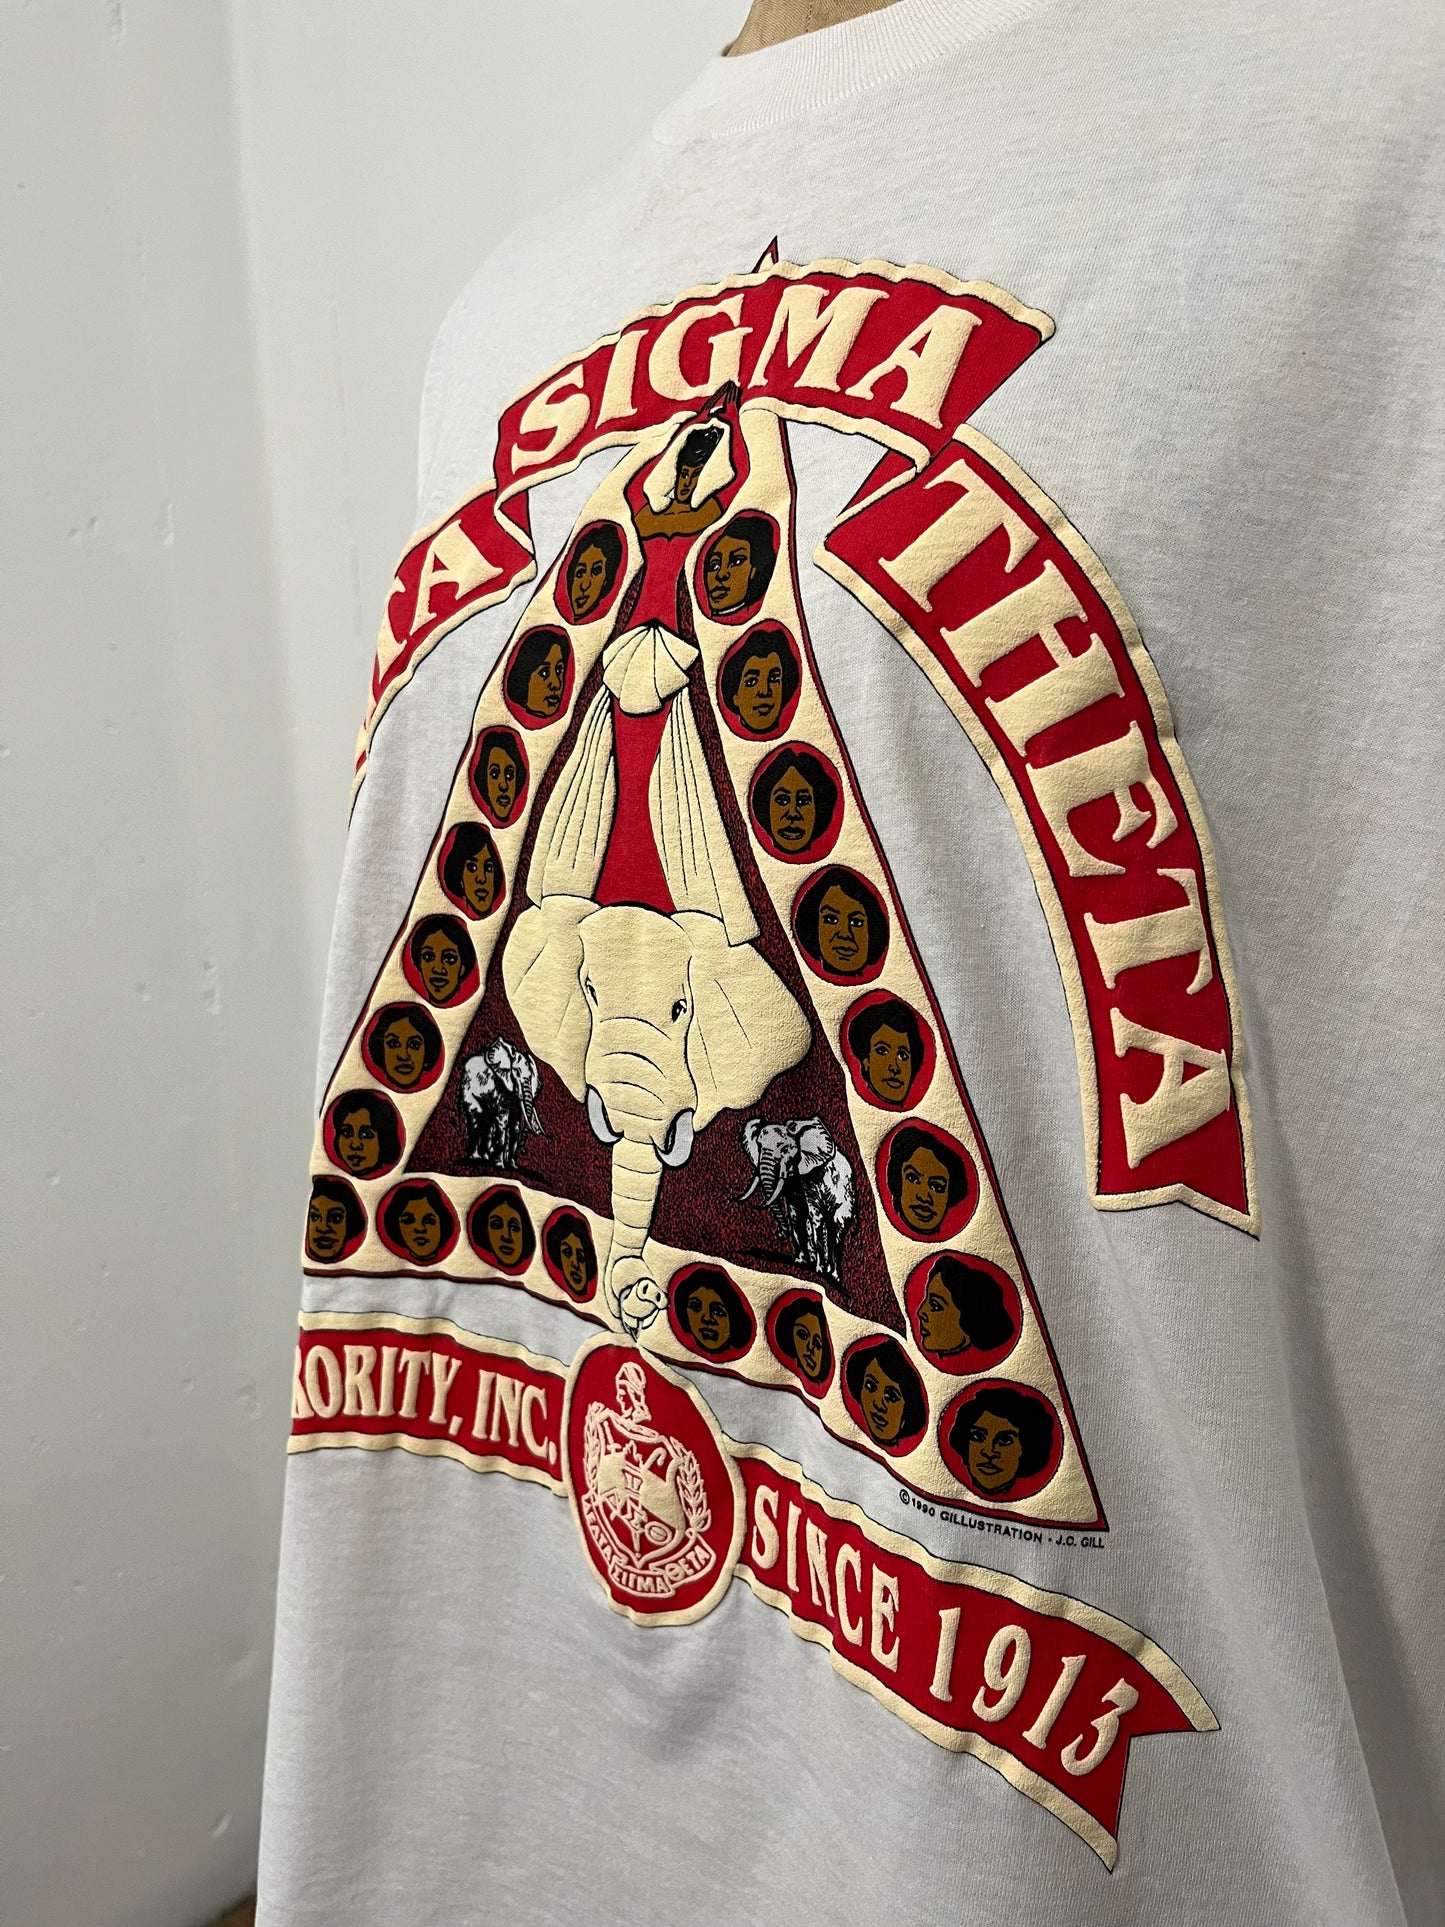 90s Delta Sigma Theta Sorority Tee